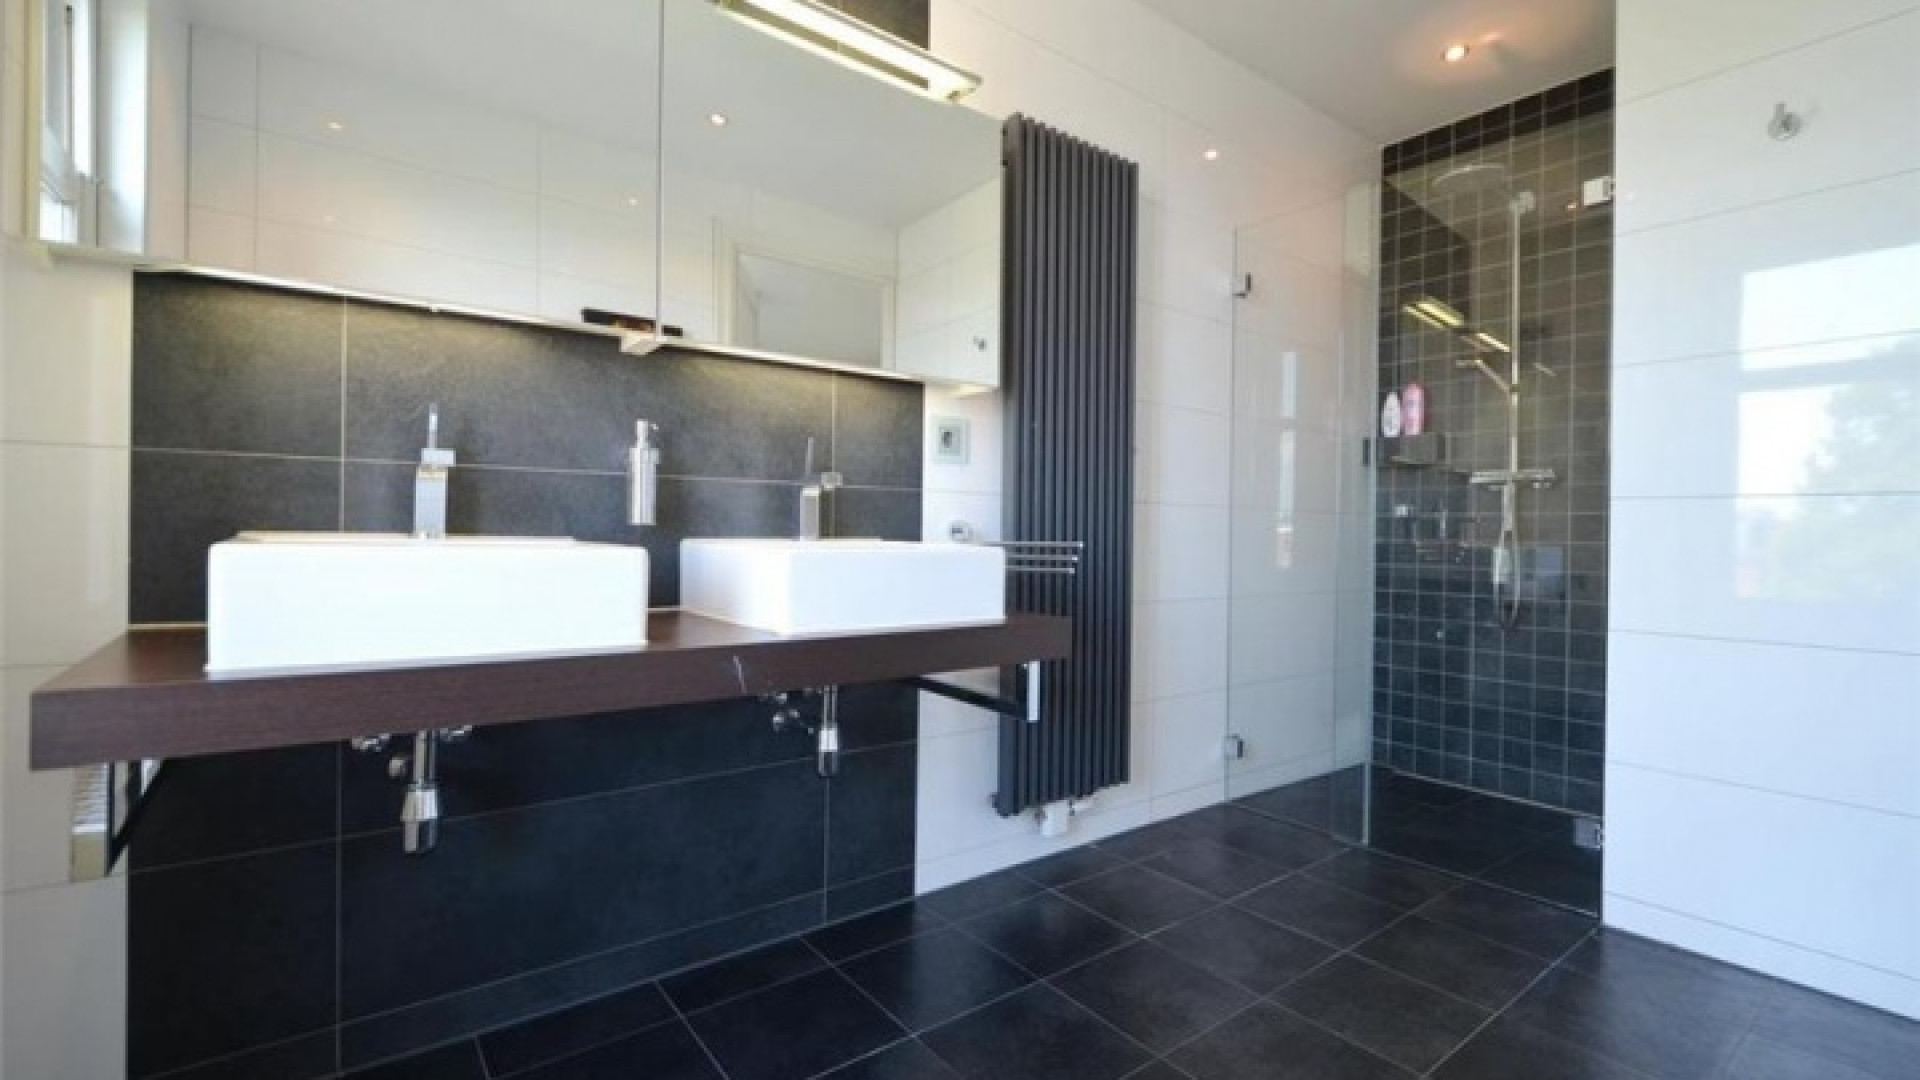 Frank Rijkaard vindt huurder voor dit zeer luxe appartement met jacuzzi op dakterras. Zie foto's 25